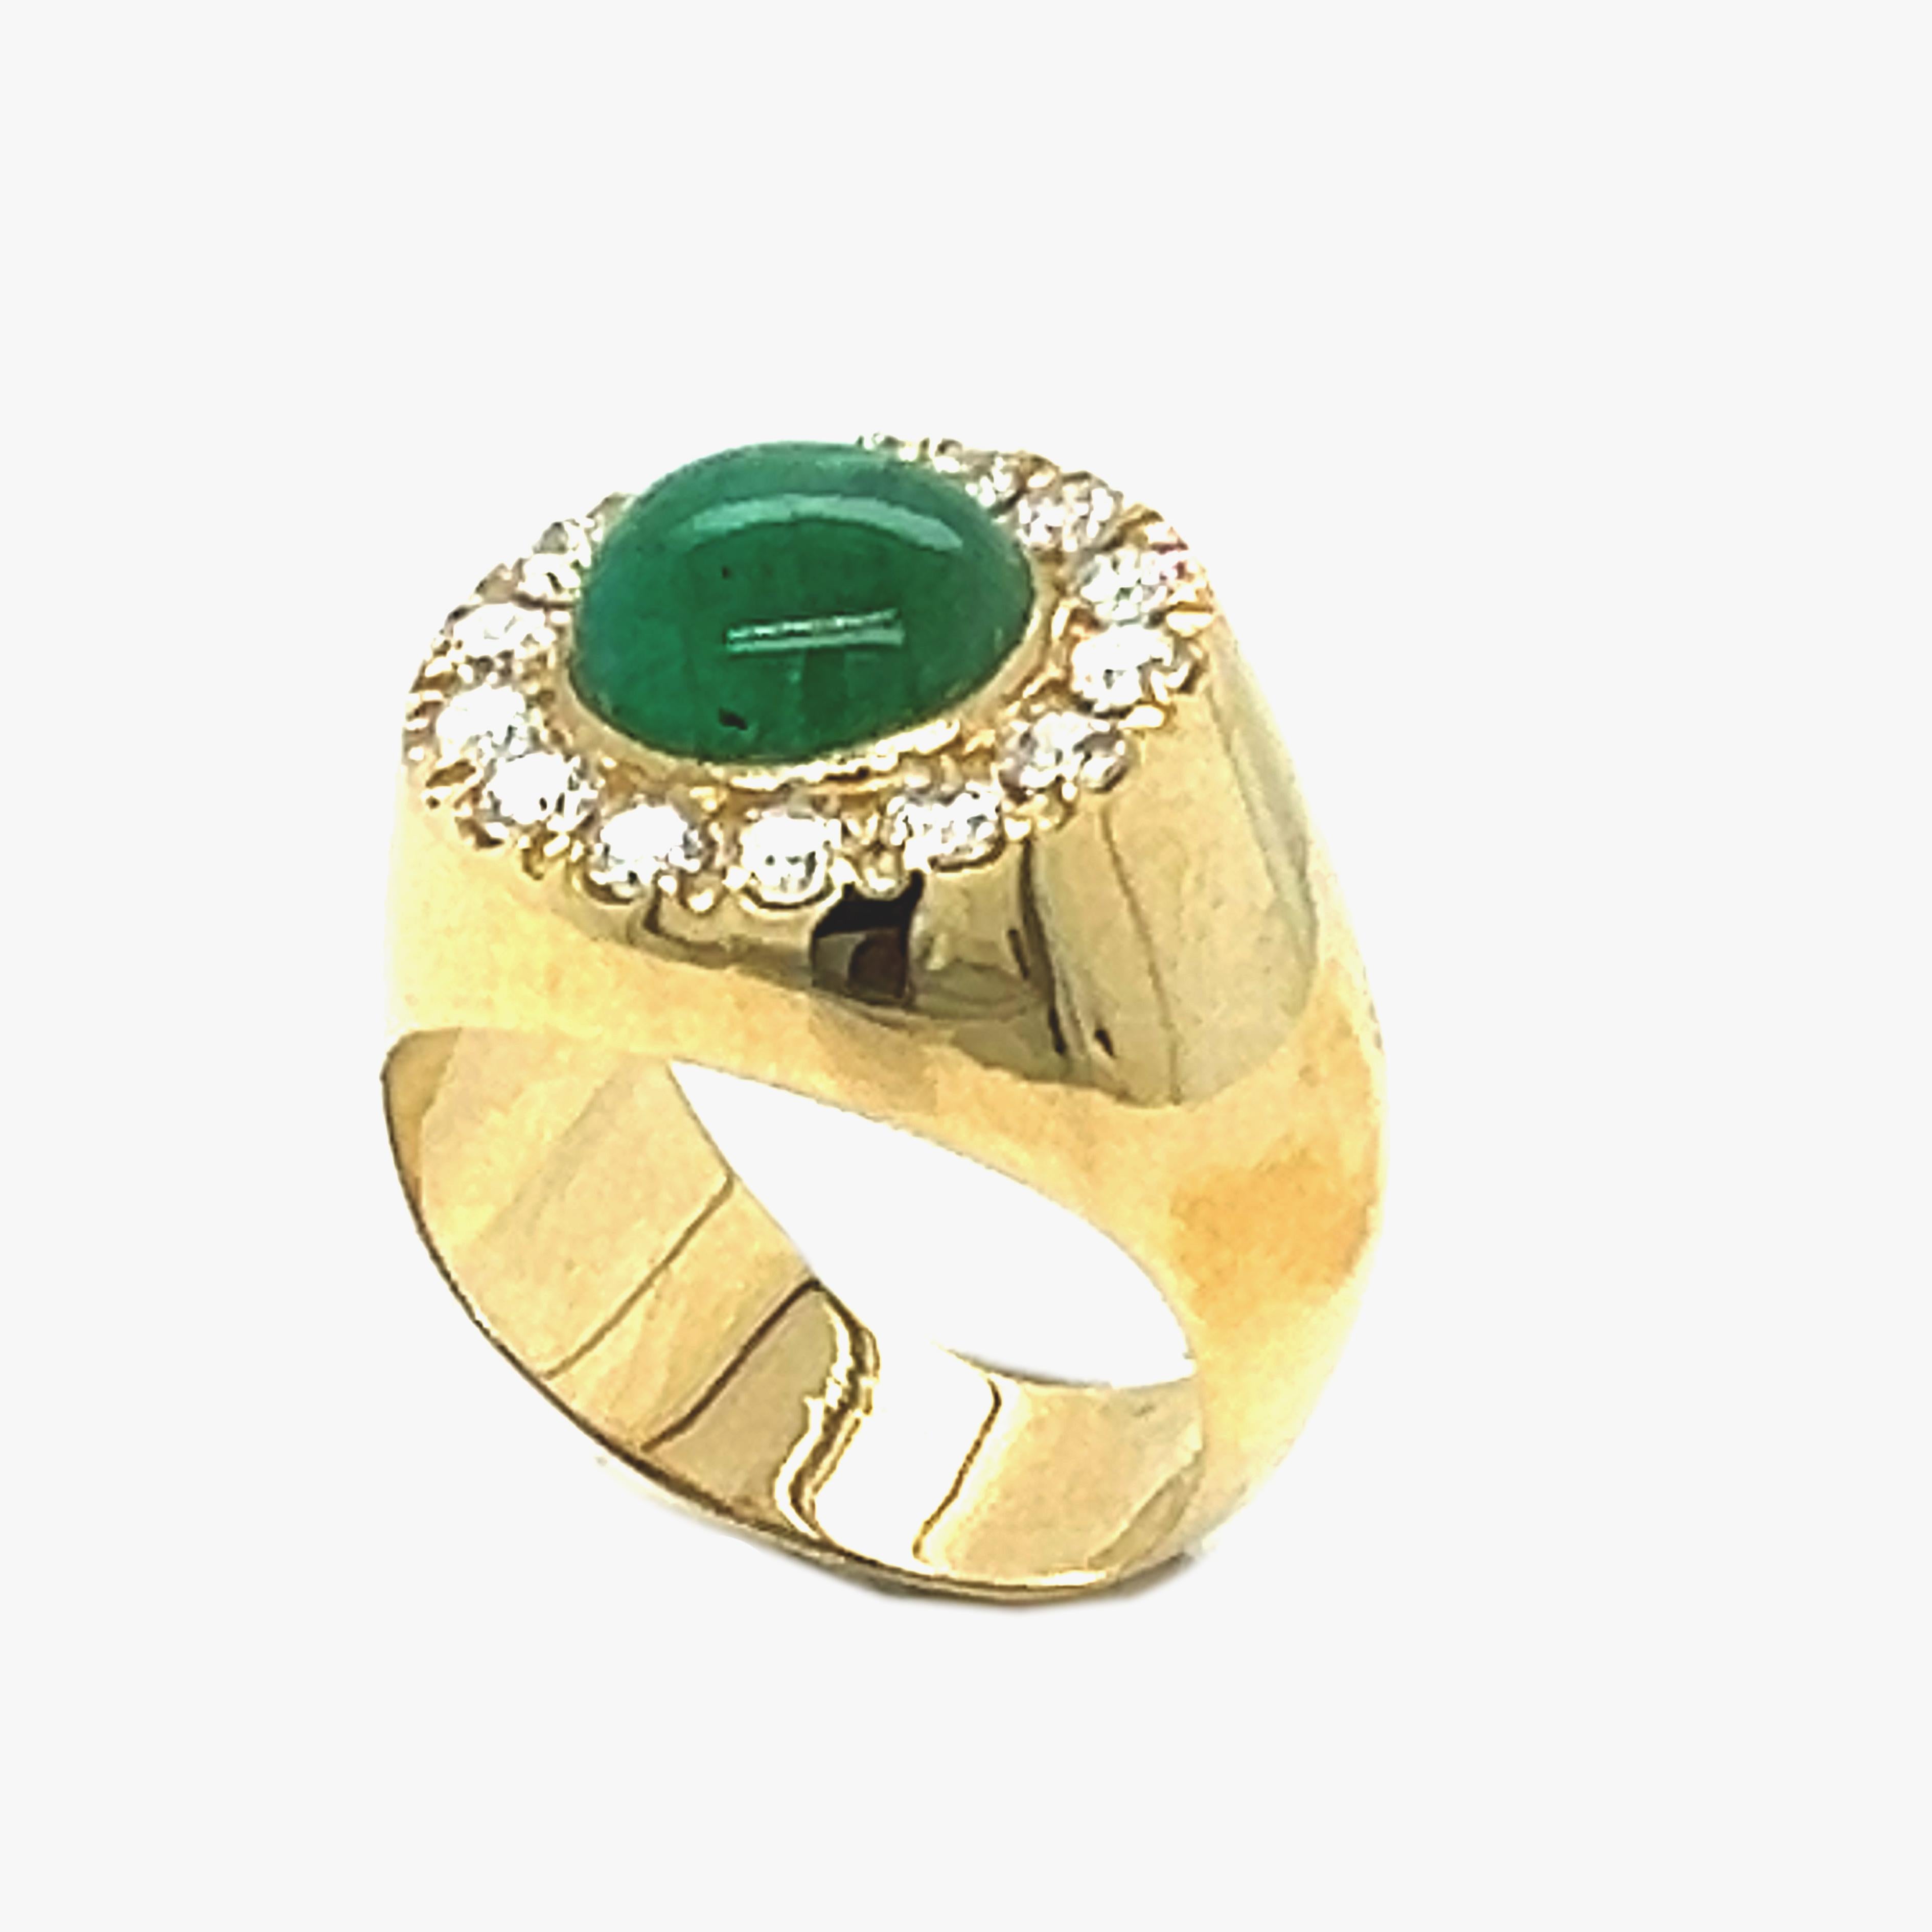 Schicker, einzigartiger und doch zeitloser Contemporary Cocktail Ring mit einem runden Smaragd-Cabochon von 2,09 Kt, umgeben von einem weißen Diamanten der Spitzenqualität von 0,89 Kt in einer eleganten Fassung aus Gelbgold, der sich sowohl als